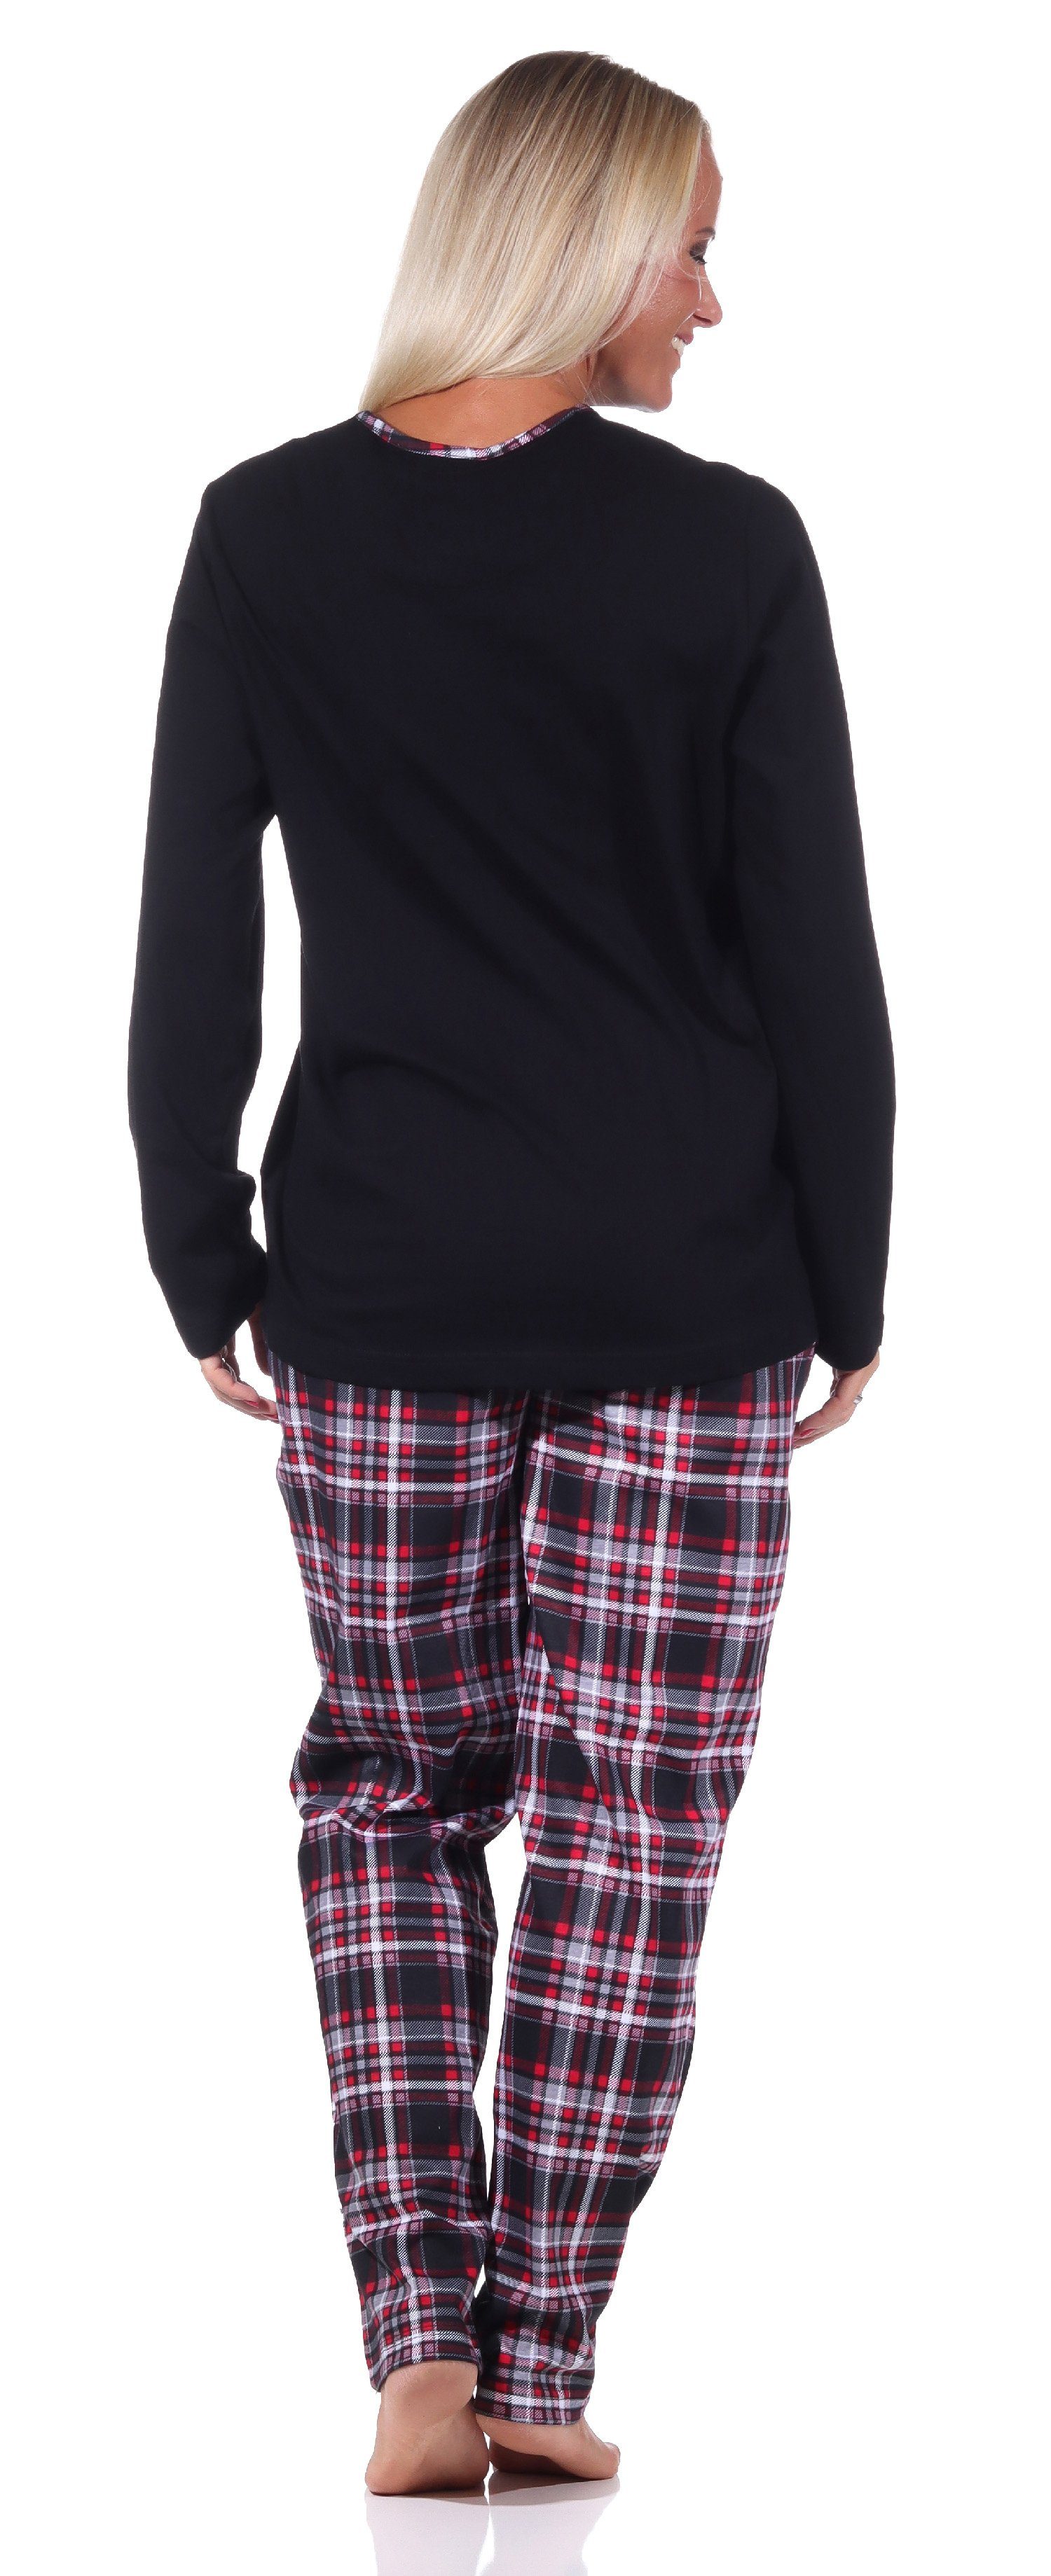 und - mit Karohose Pyjama schwarz in Tiermotiv Damen Übergrößen auch süssen Normann Pyjama